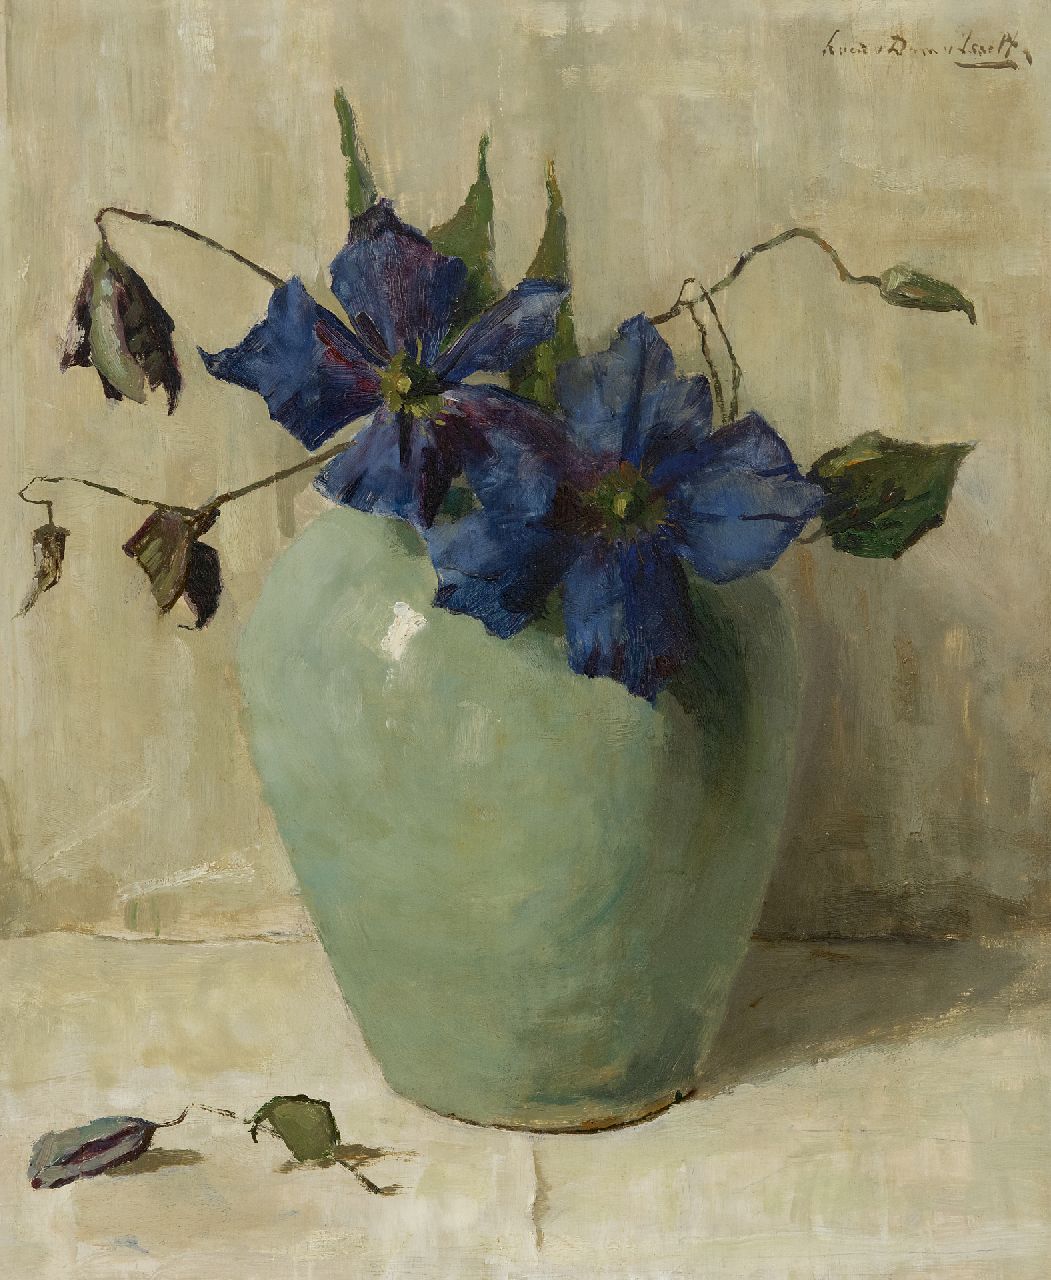 Dam van Isselt L. van | Lucie van Dam van Isselt, Purple clematis in a celadon green vase, oil on panel 47.1 x 38.4 cm, signed u.r.